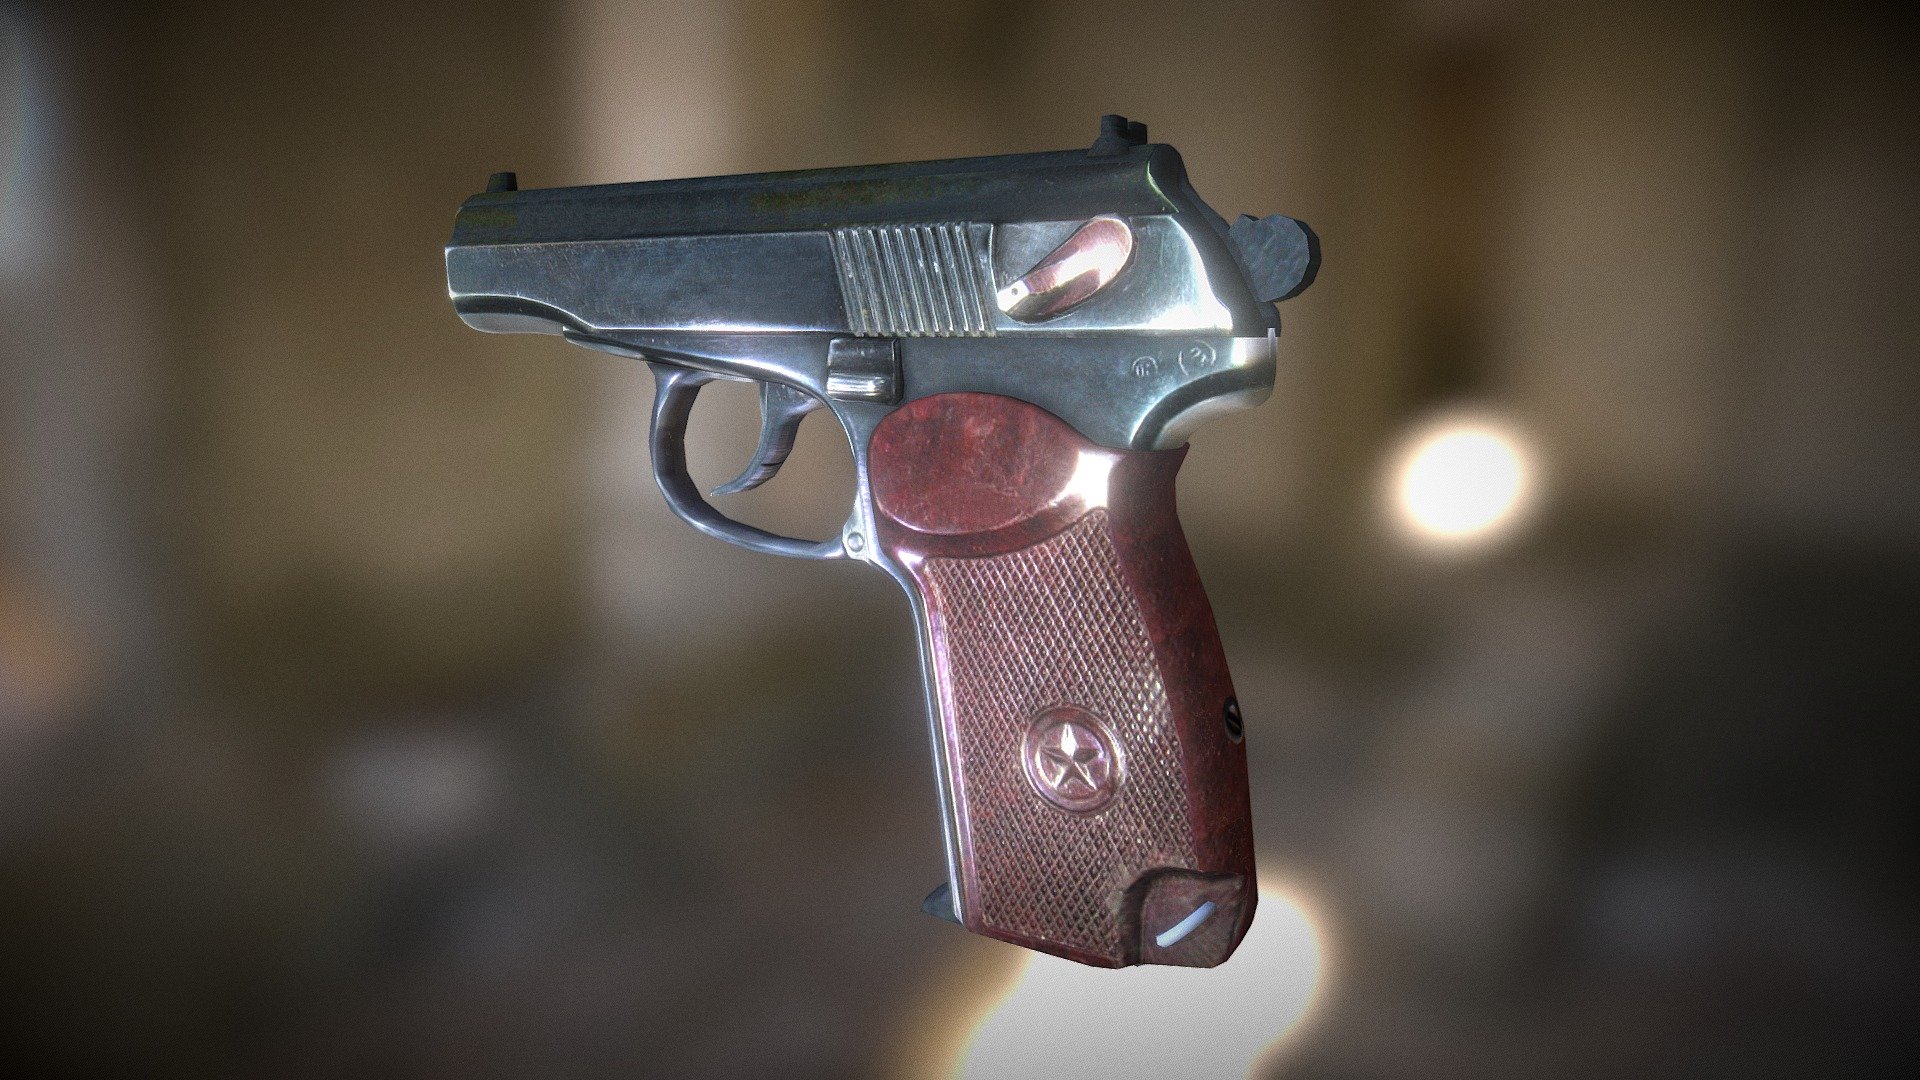 The Makarov pistol